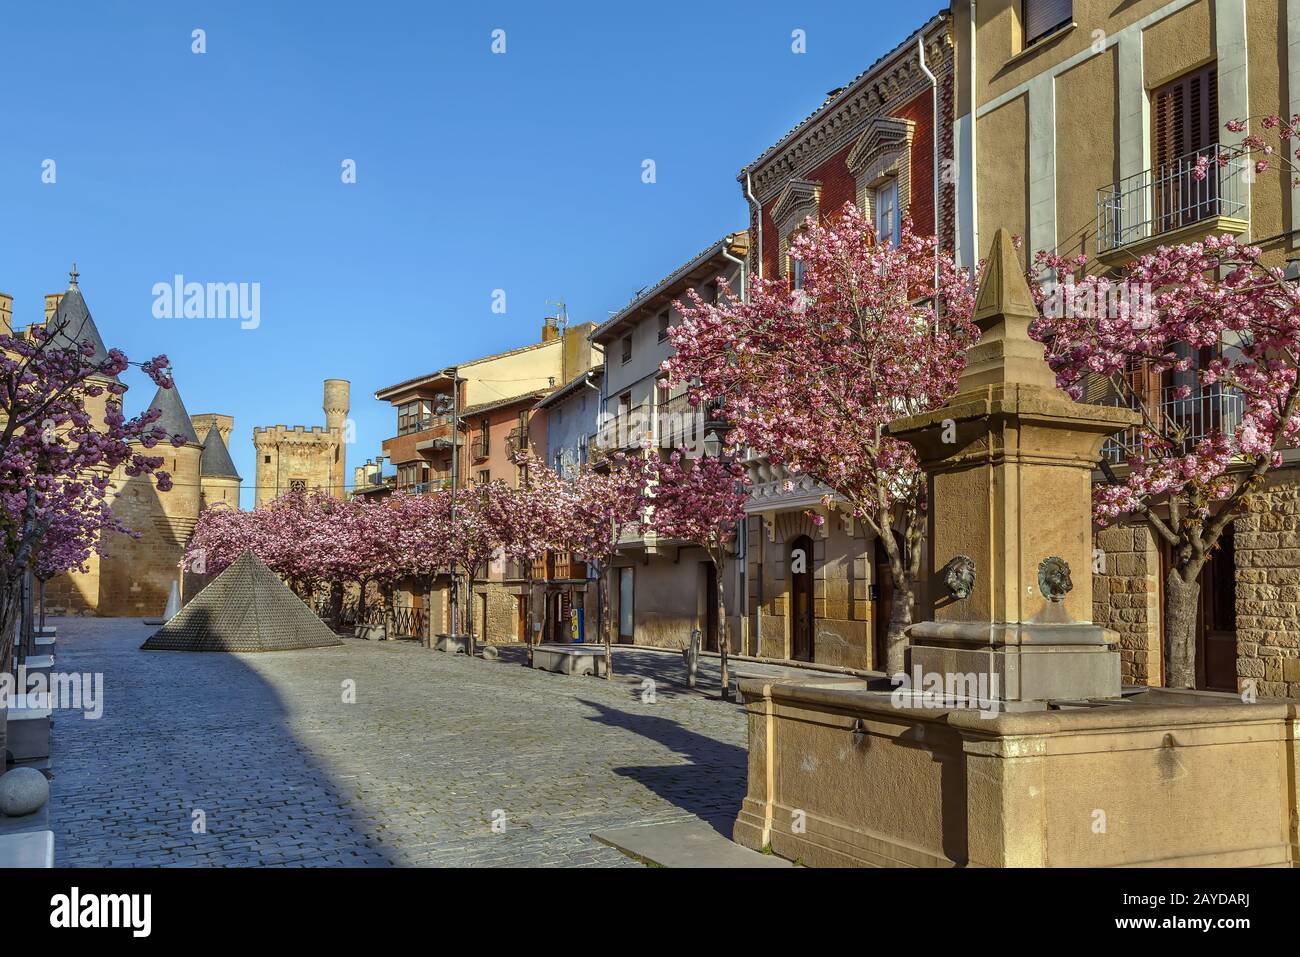 Street in Olite, Navarre, Spain Stock Photo